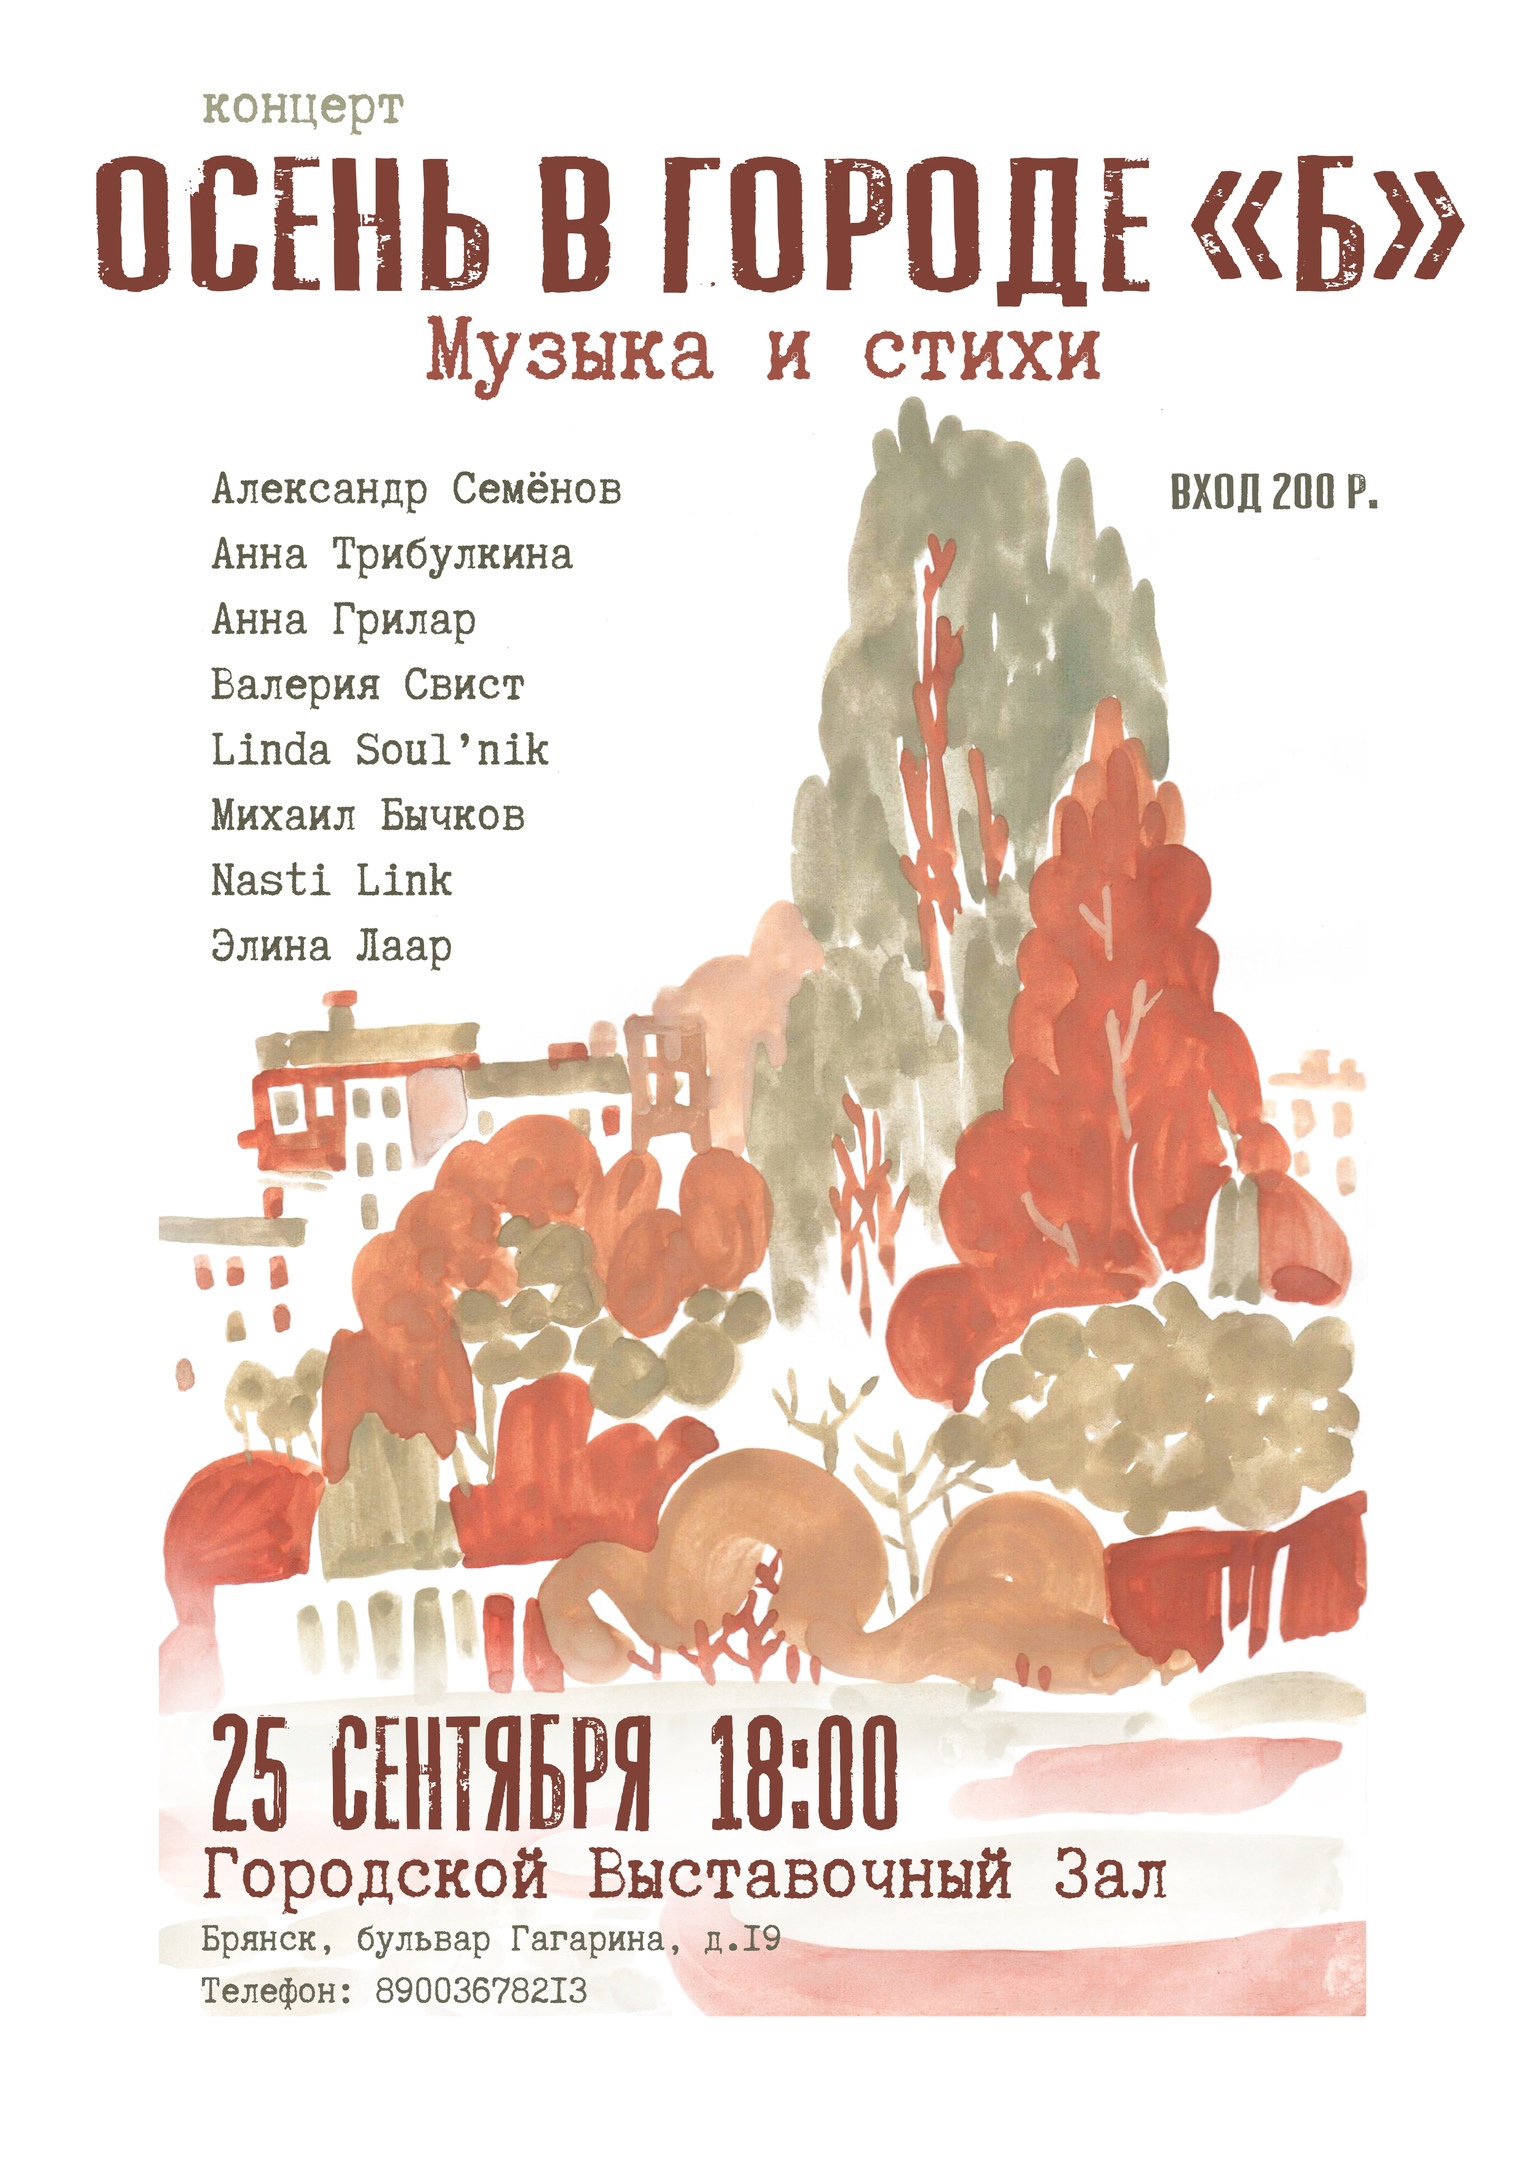 Брянцев приглашают на концерт "Осень в городе "Б"